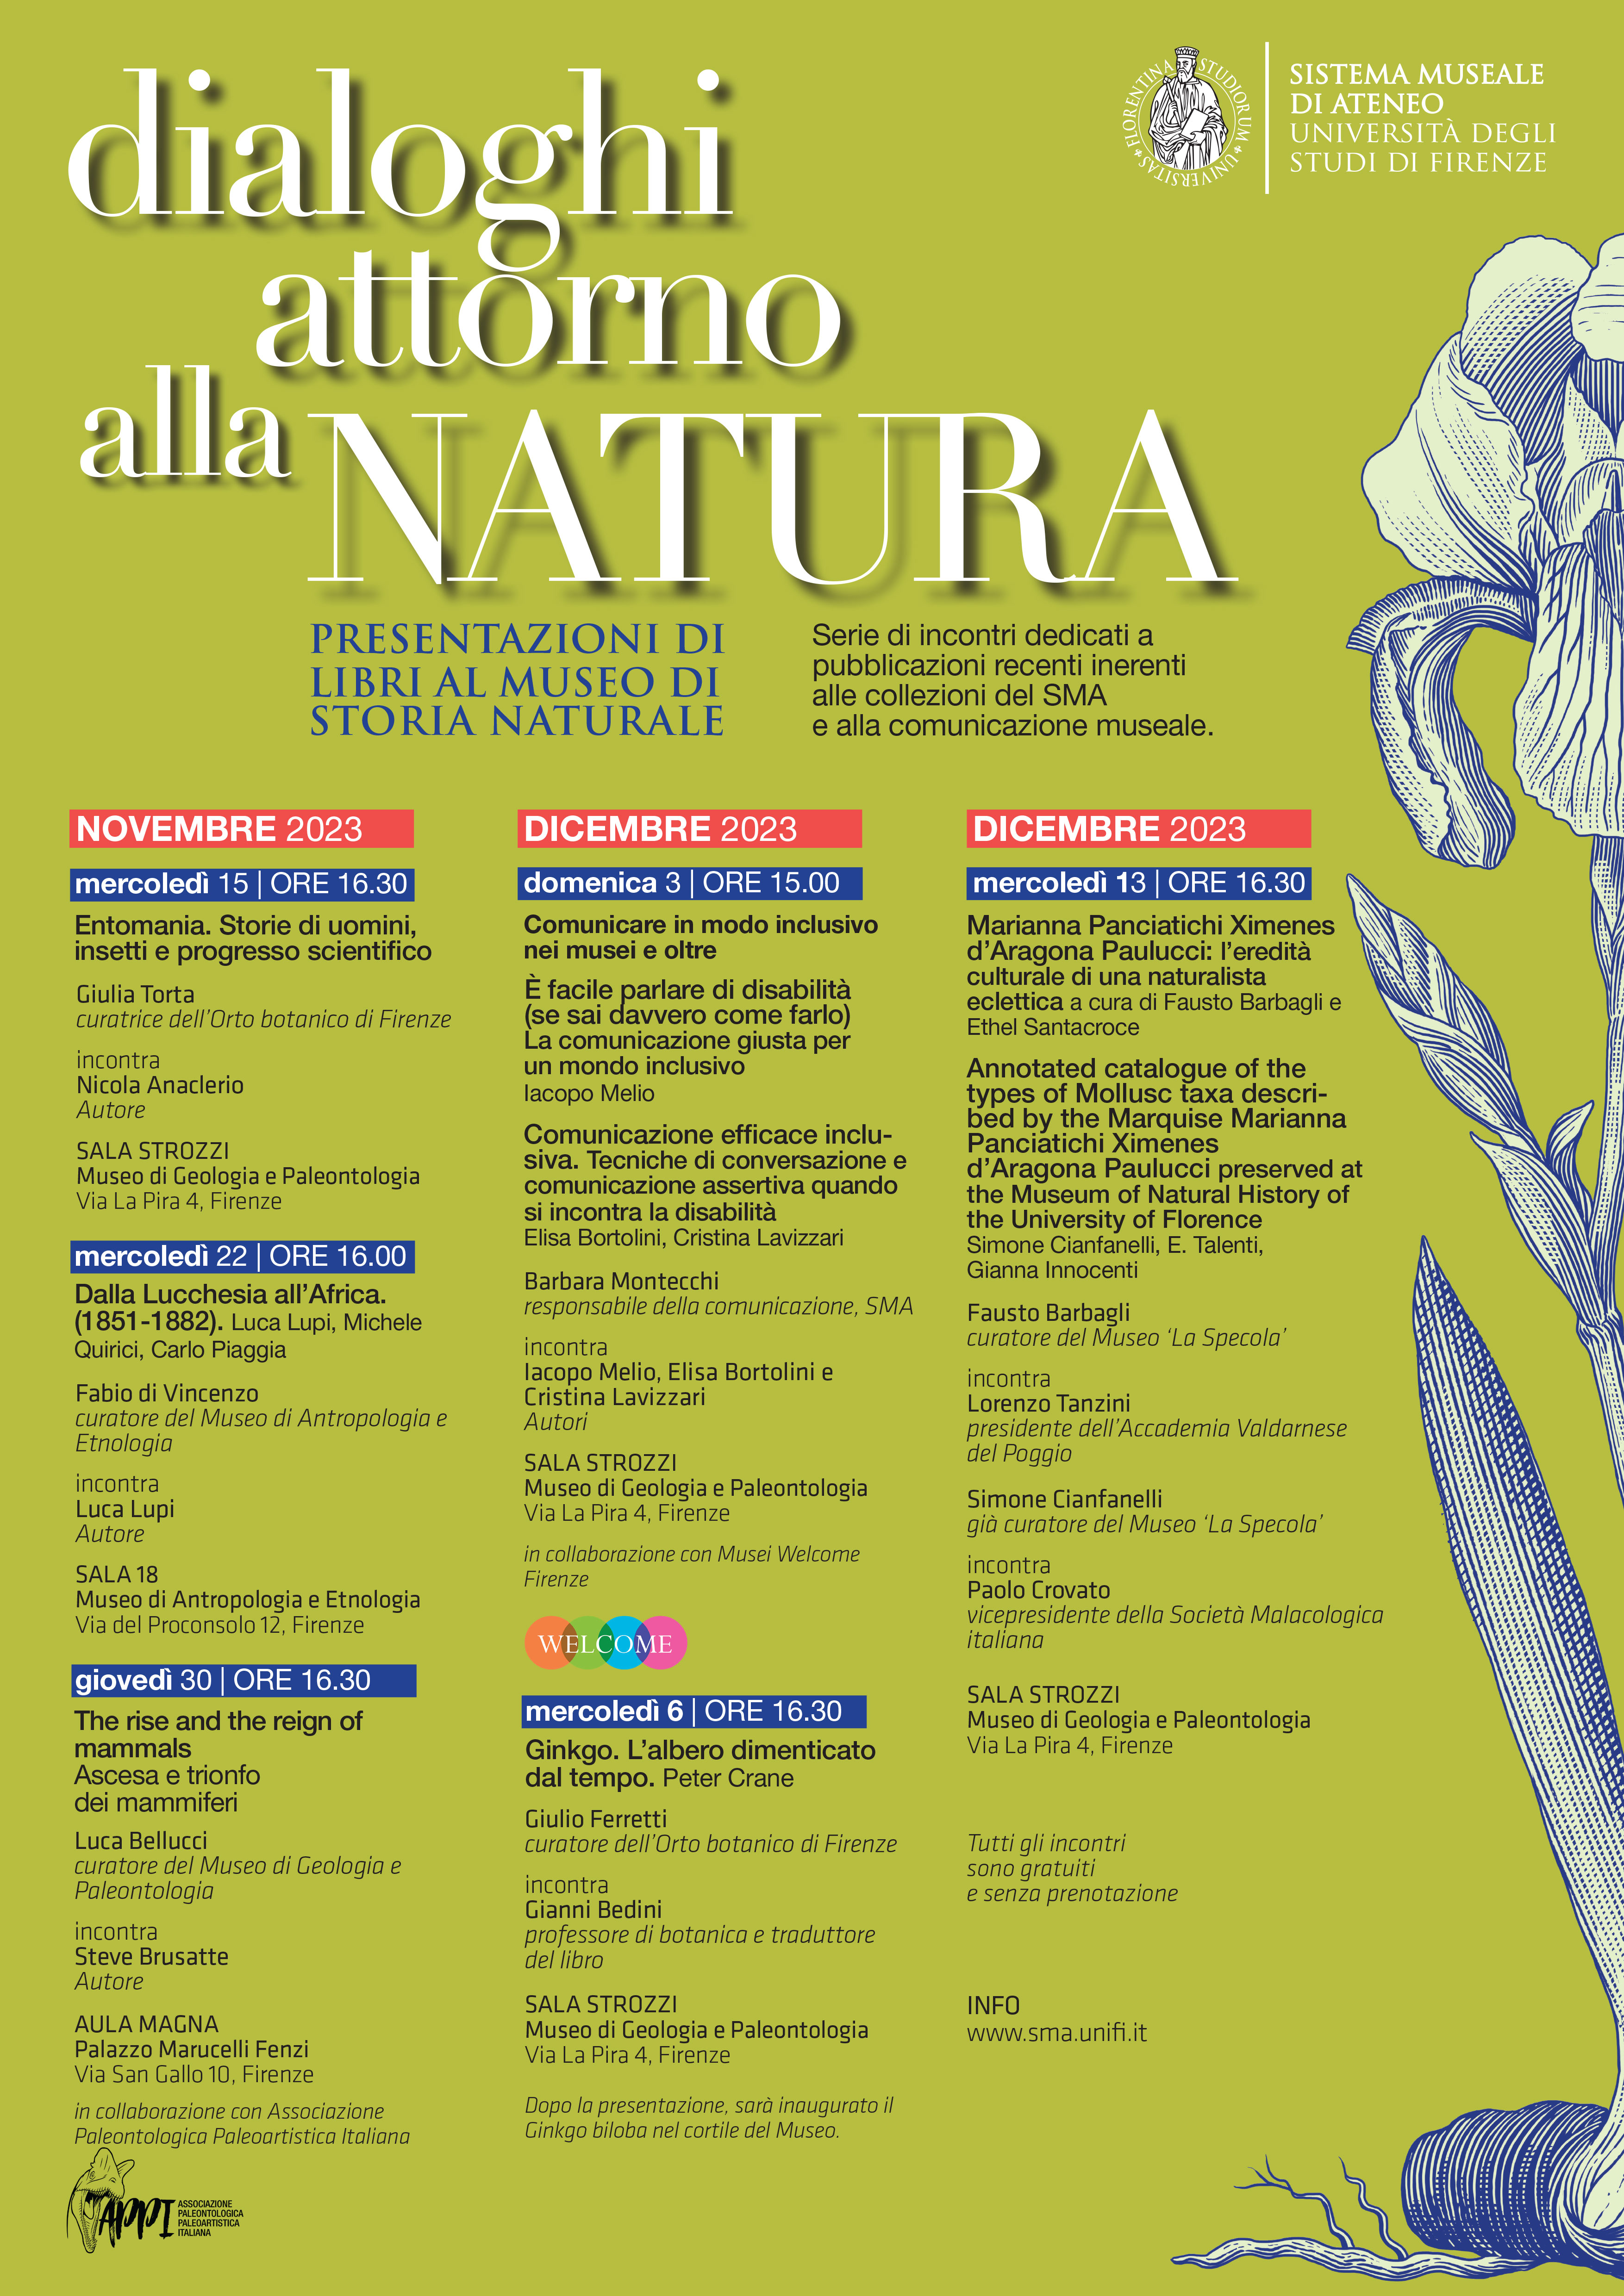 Dialoghi attorno alla Natura 13 Dicembre 2023 ore 16:30 Firenze